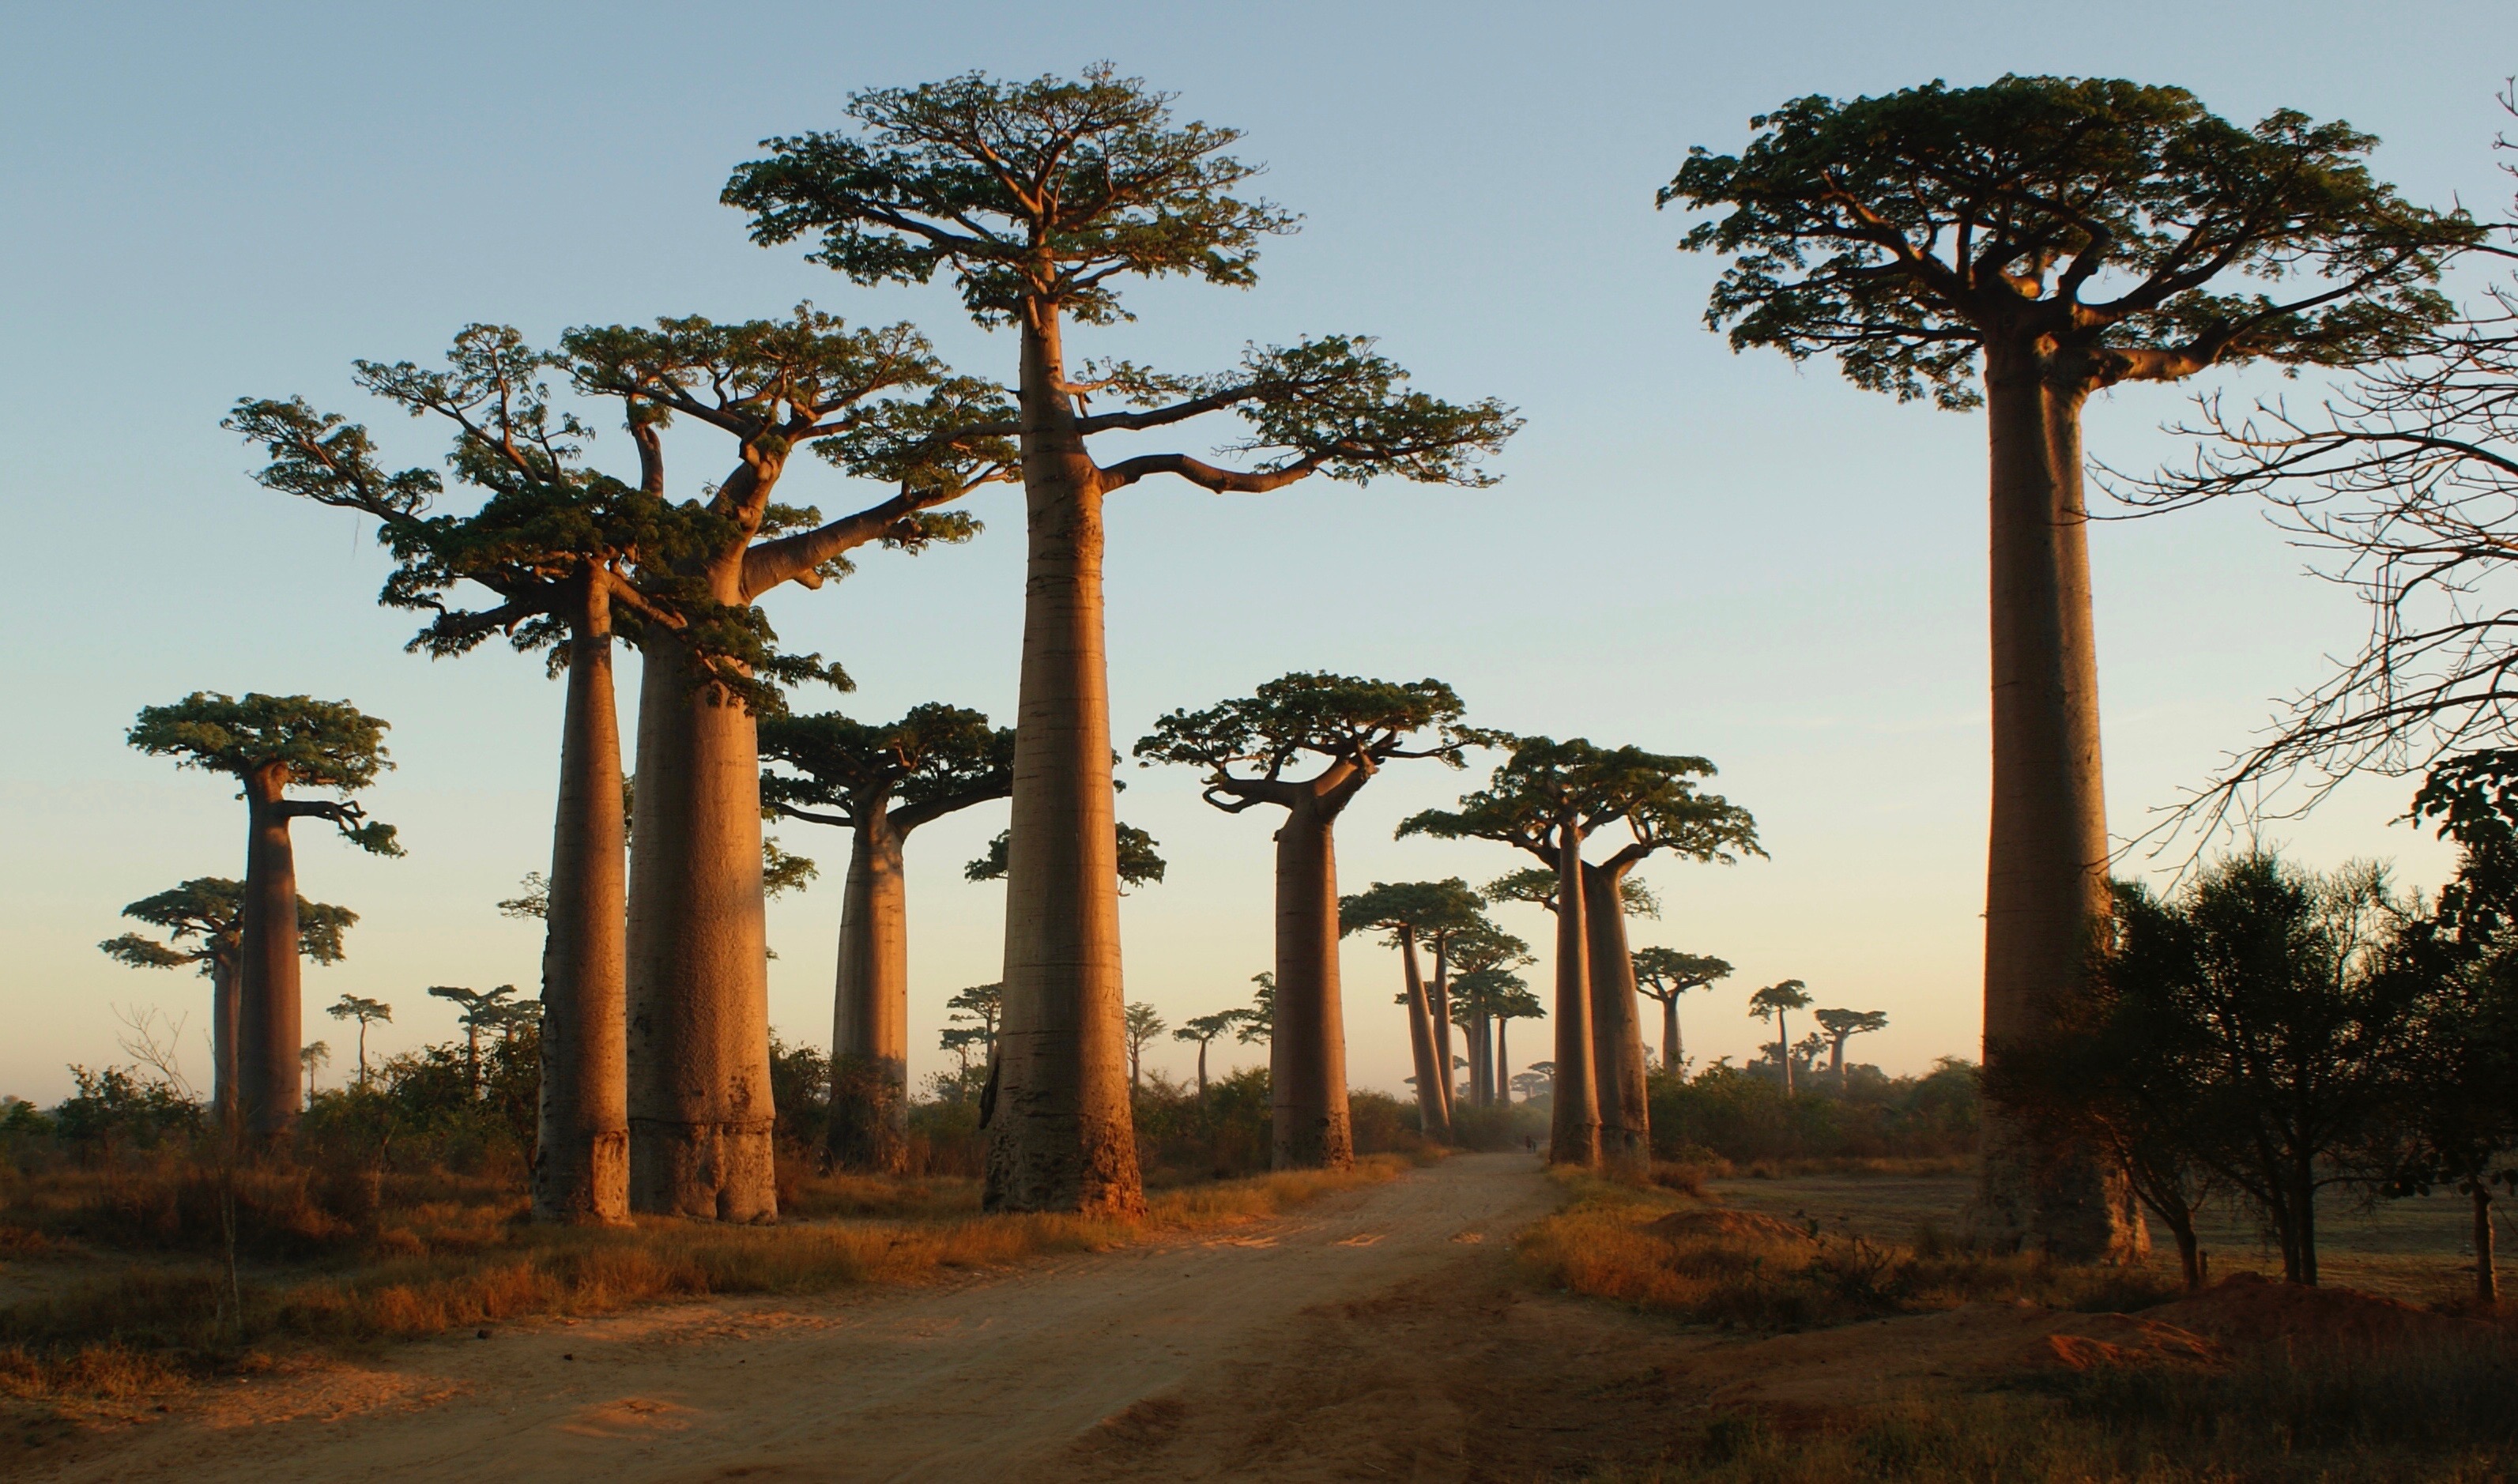 马达加斯加猴面包树大道,一生必去一次的地方